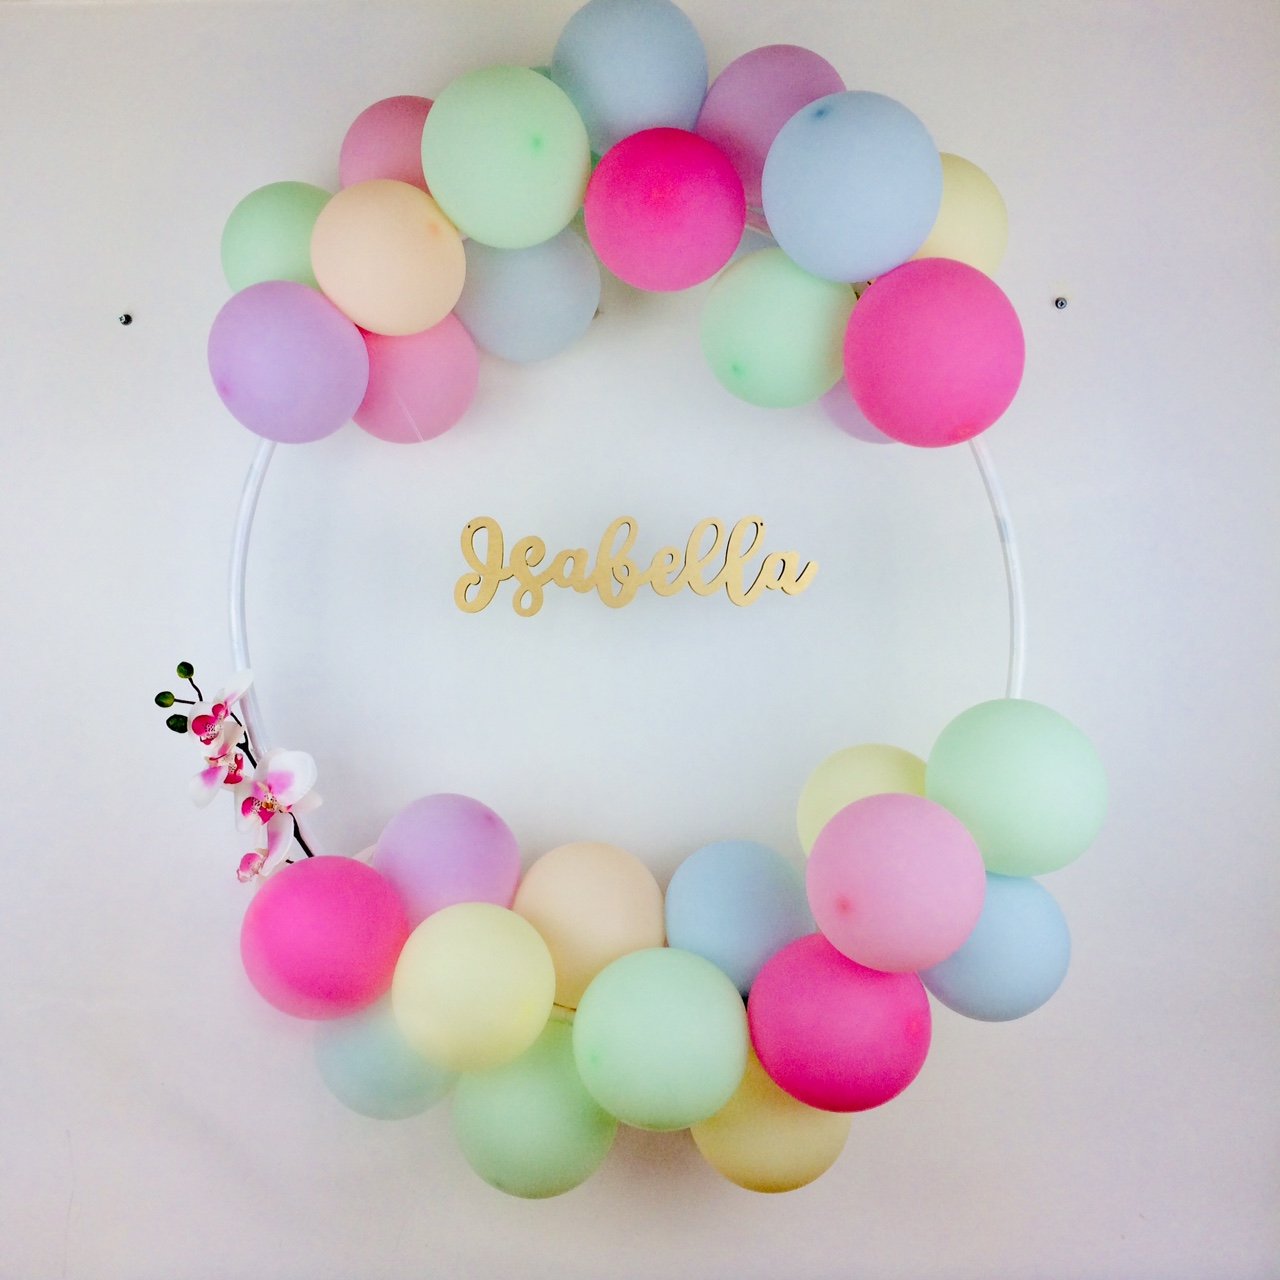 Bespoke Balloon Hoop Name Decoration Kit I Bespoke Birthday Decorations I My Dream Party Shop I UK